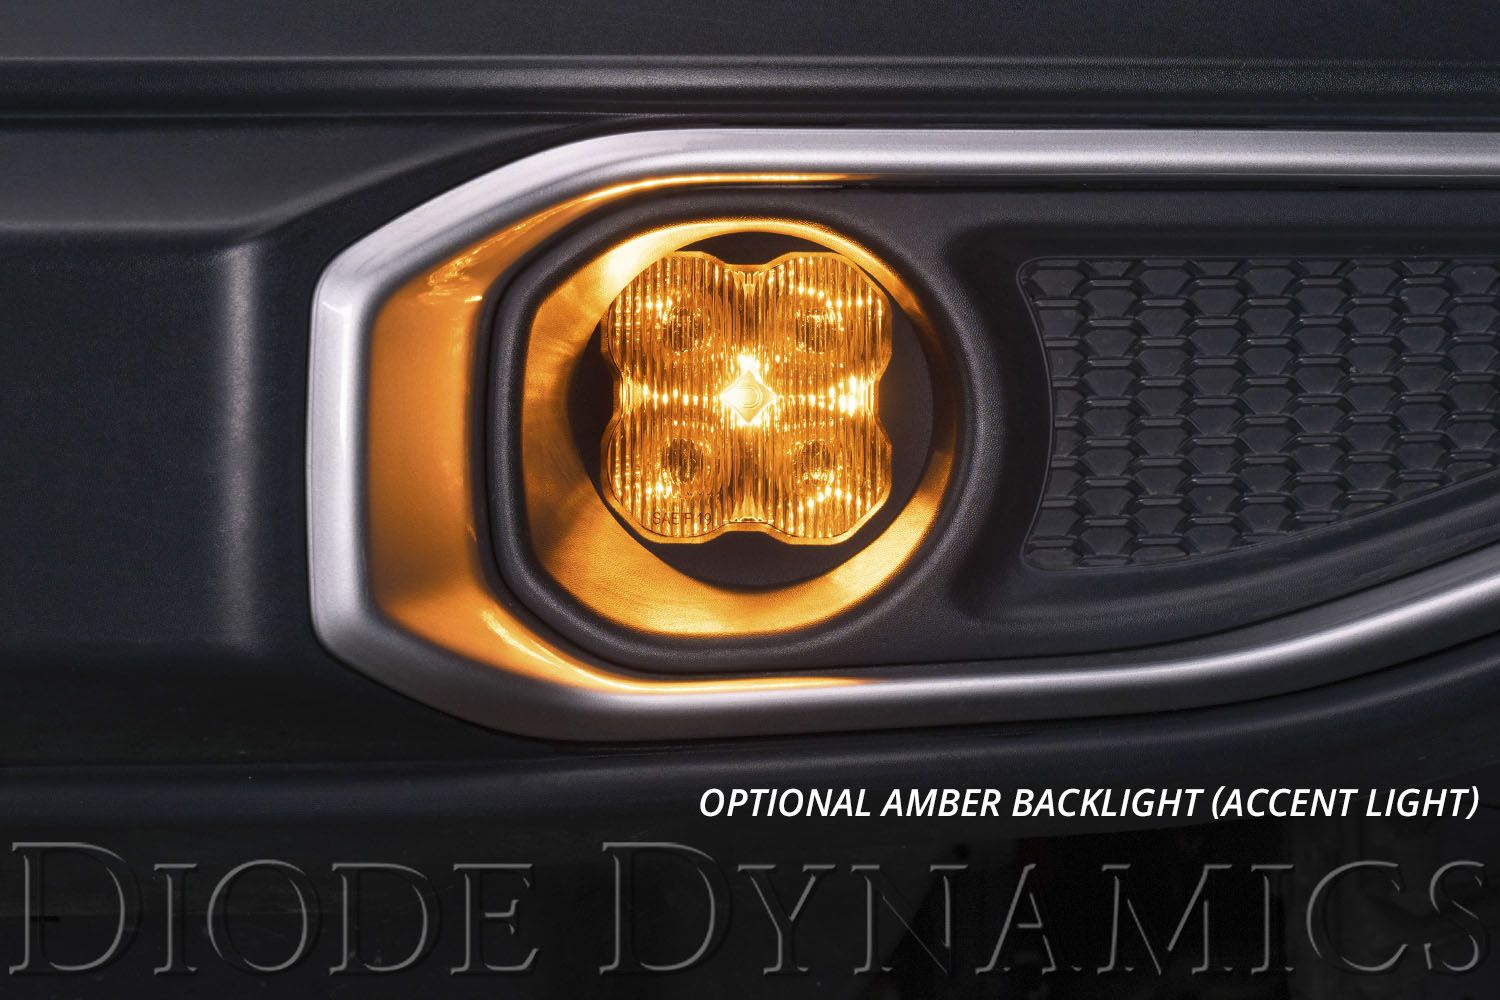 SS3 LED Fog Light Kit for 2013-2015 Lexus LX570 Diode Dynamics-